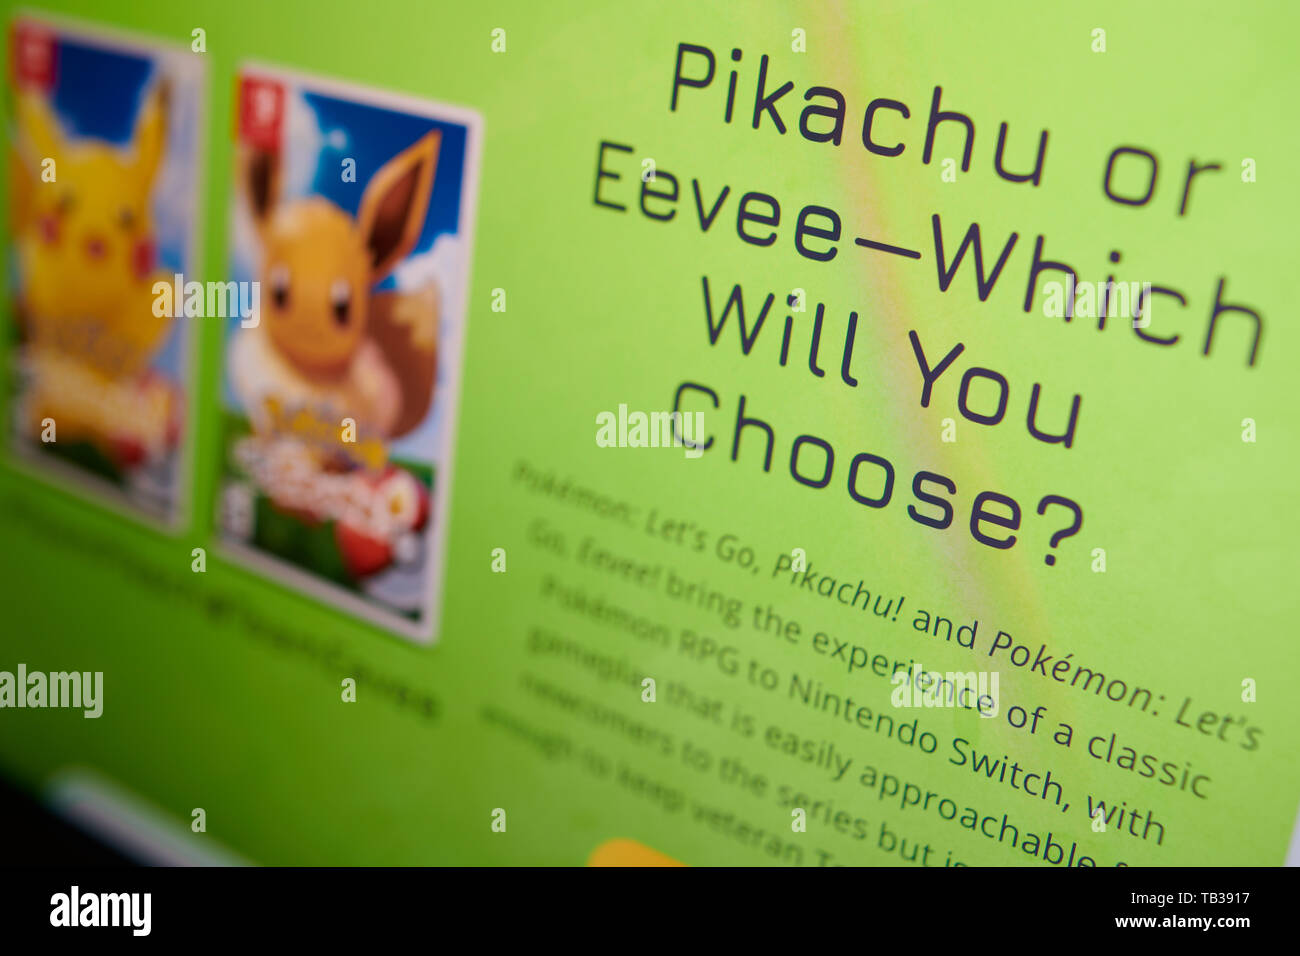 - Prague, 22 mai 2019 : Gros plan sur Pikachu ou Évoli question photographié d'écran du site. Banque D'Images